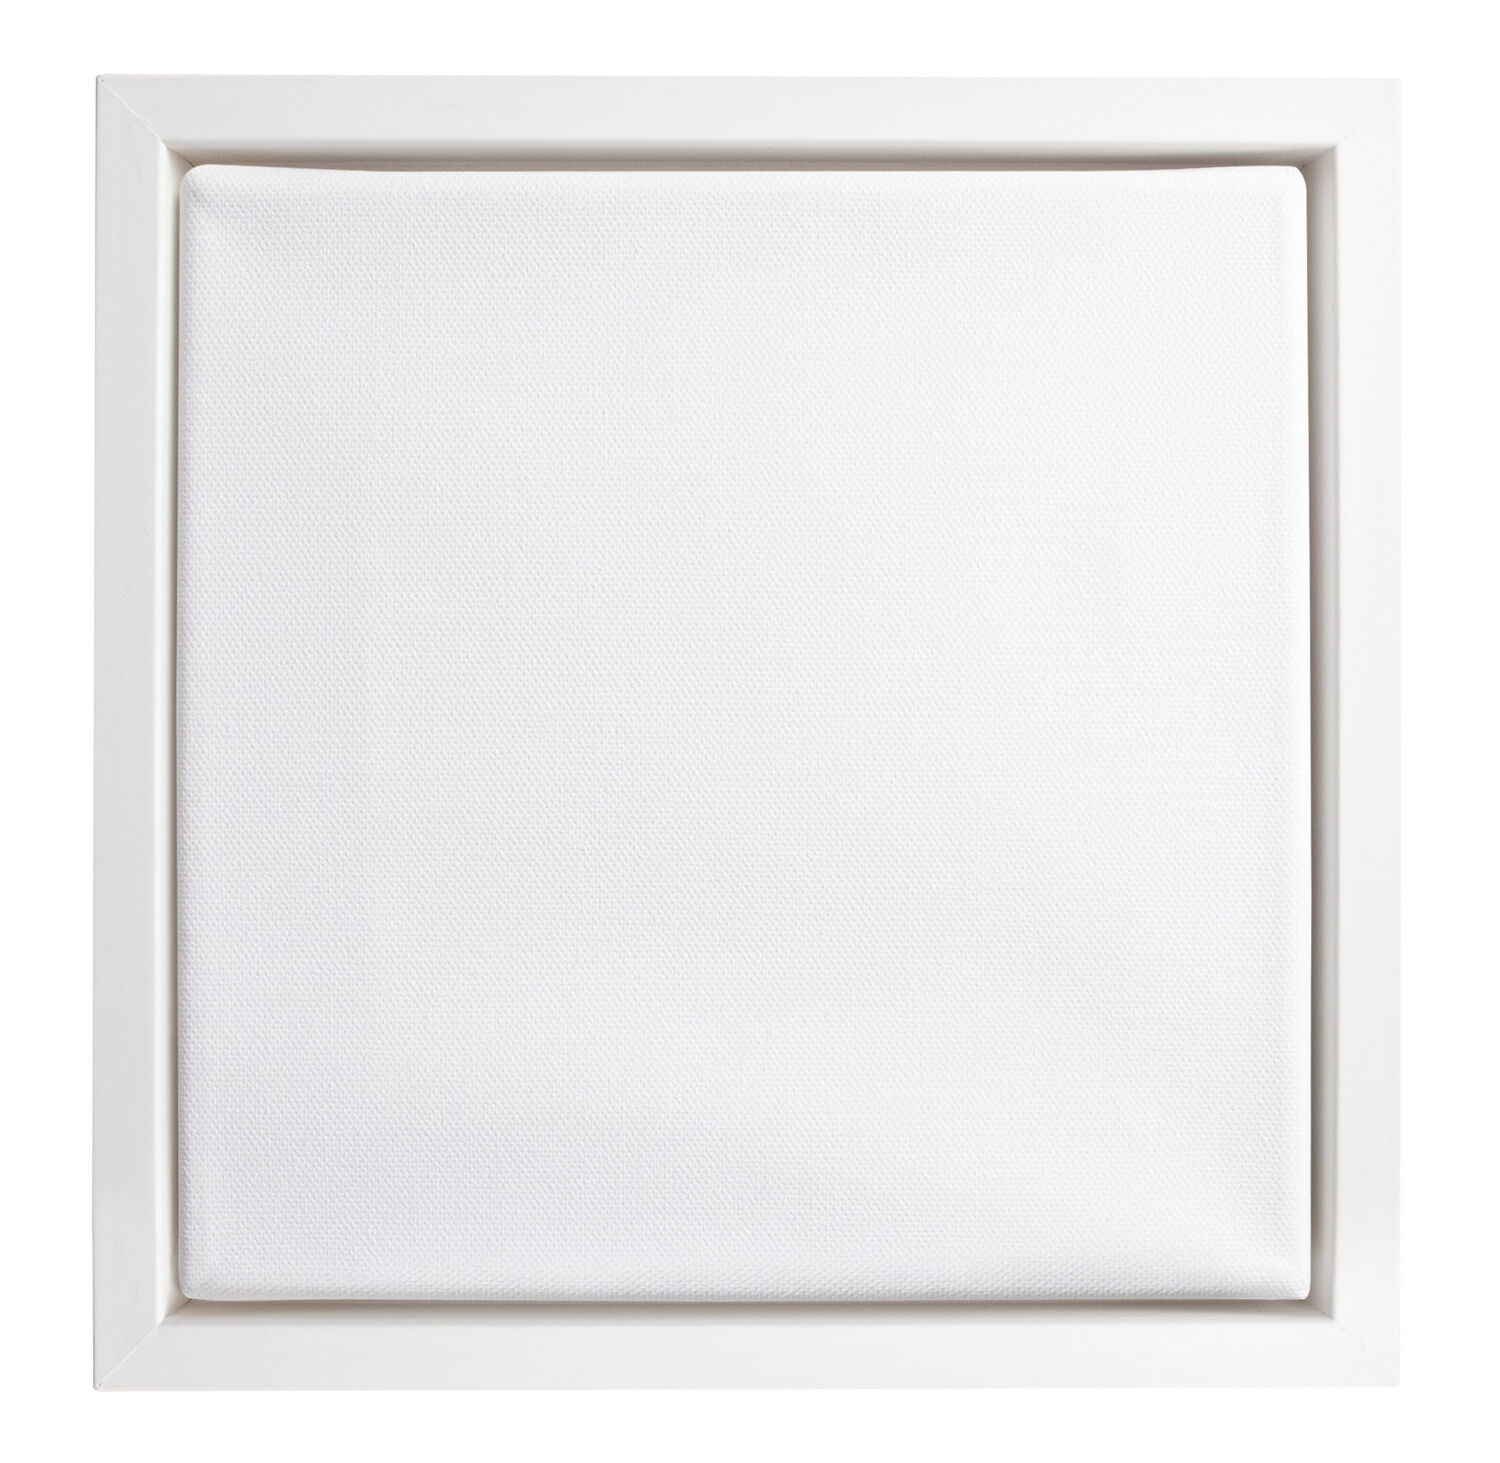 NEU Keilrahmen in Bilderrahmen mit Schattenfuge Weiß, 20 x 20 cm KR + Schrauben - 1 Stück